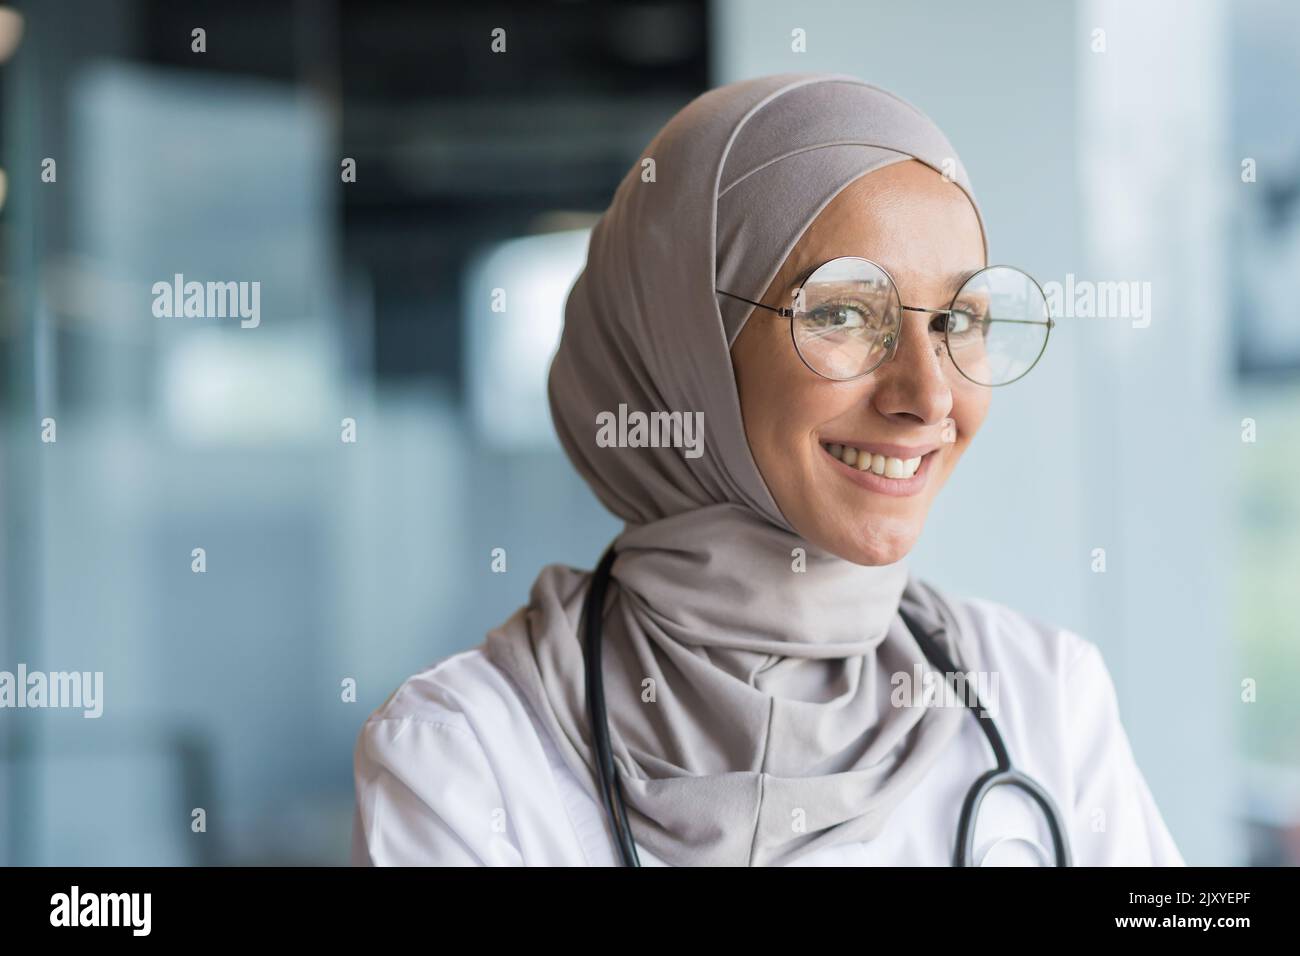 Primo piano ritratto fotografico di una dottoressa musulmana in hijab grigio, medico femminile sorridente e guardando la macchina fotografica, operatrice in occhiali e camice medico bianco e occhiali che lavorano all'interno di un moderno ufficio clinico Foto Stock